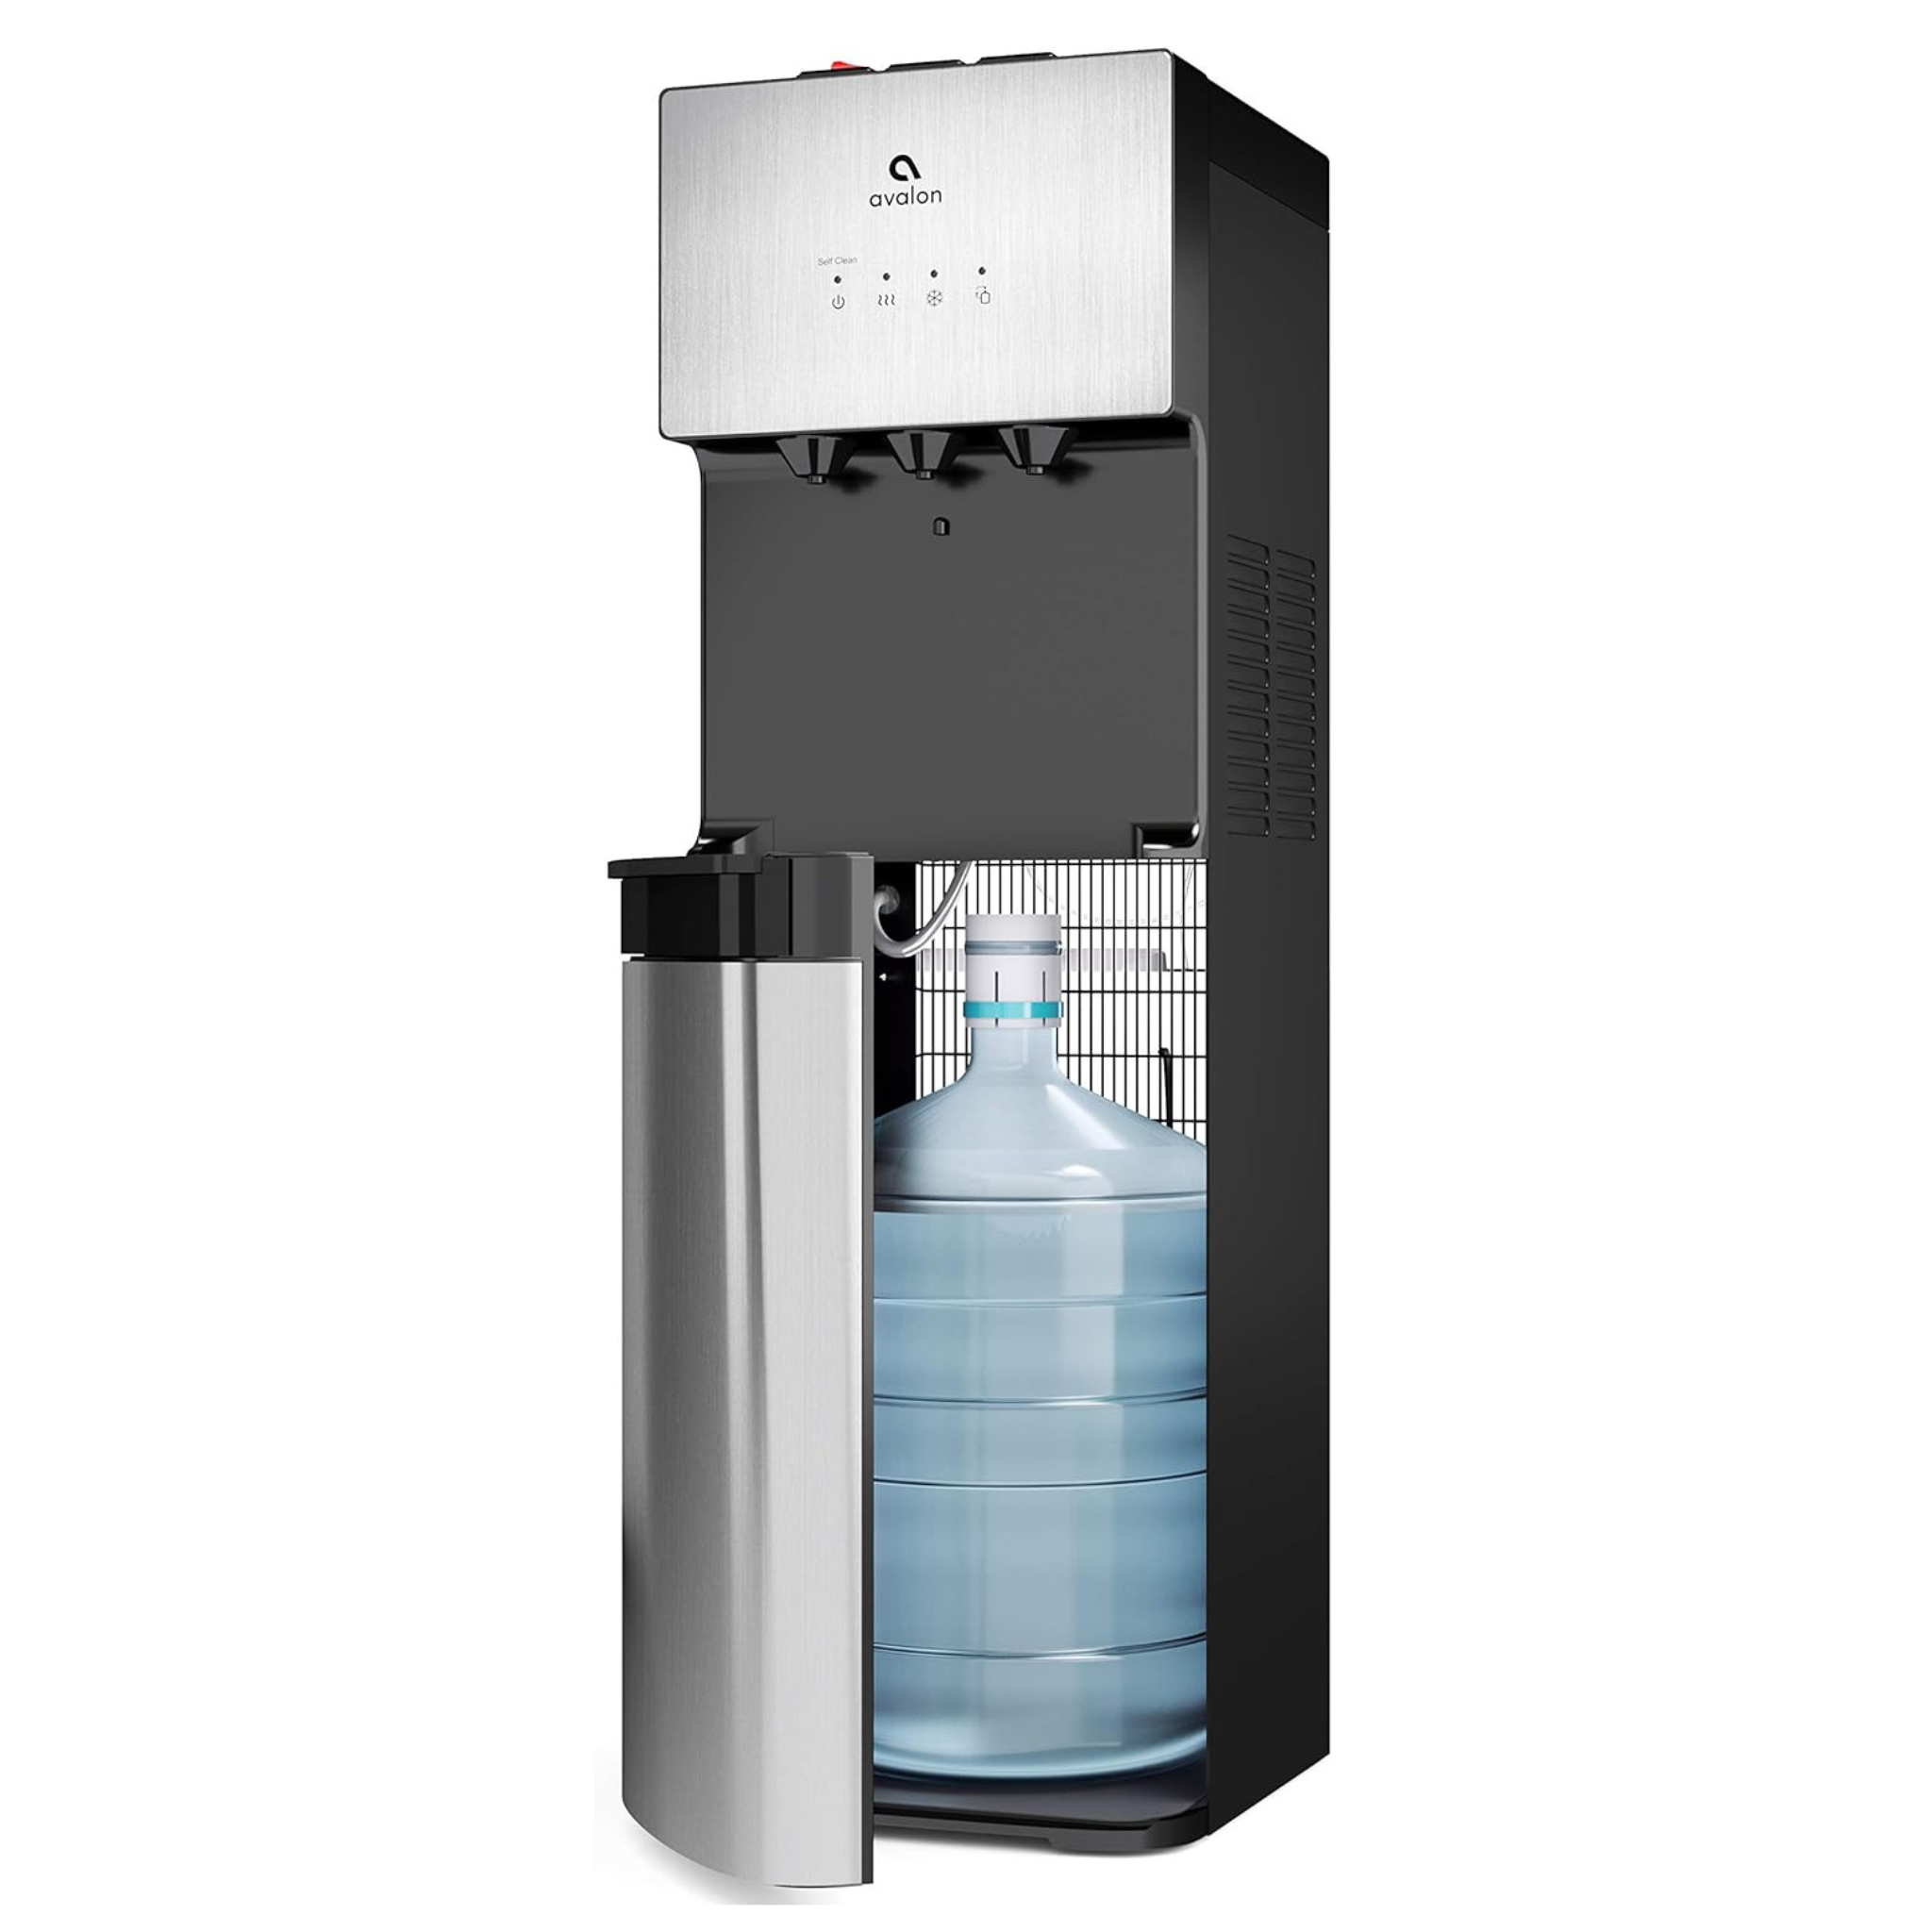 Avalon Water Dispenser, Stainless Steel